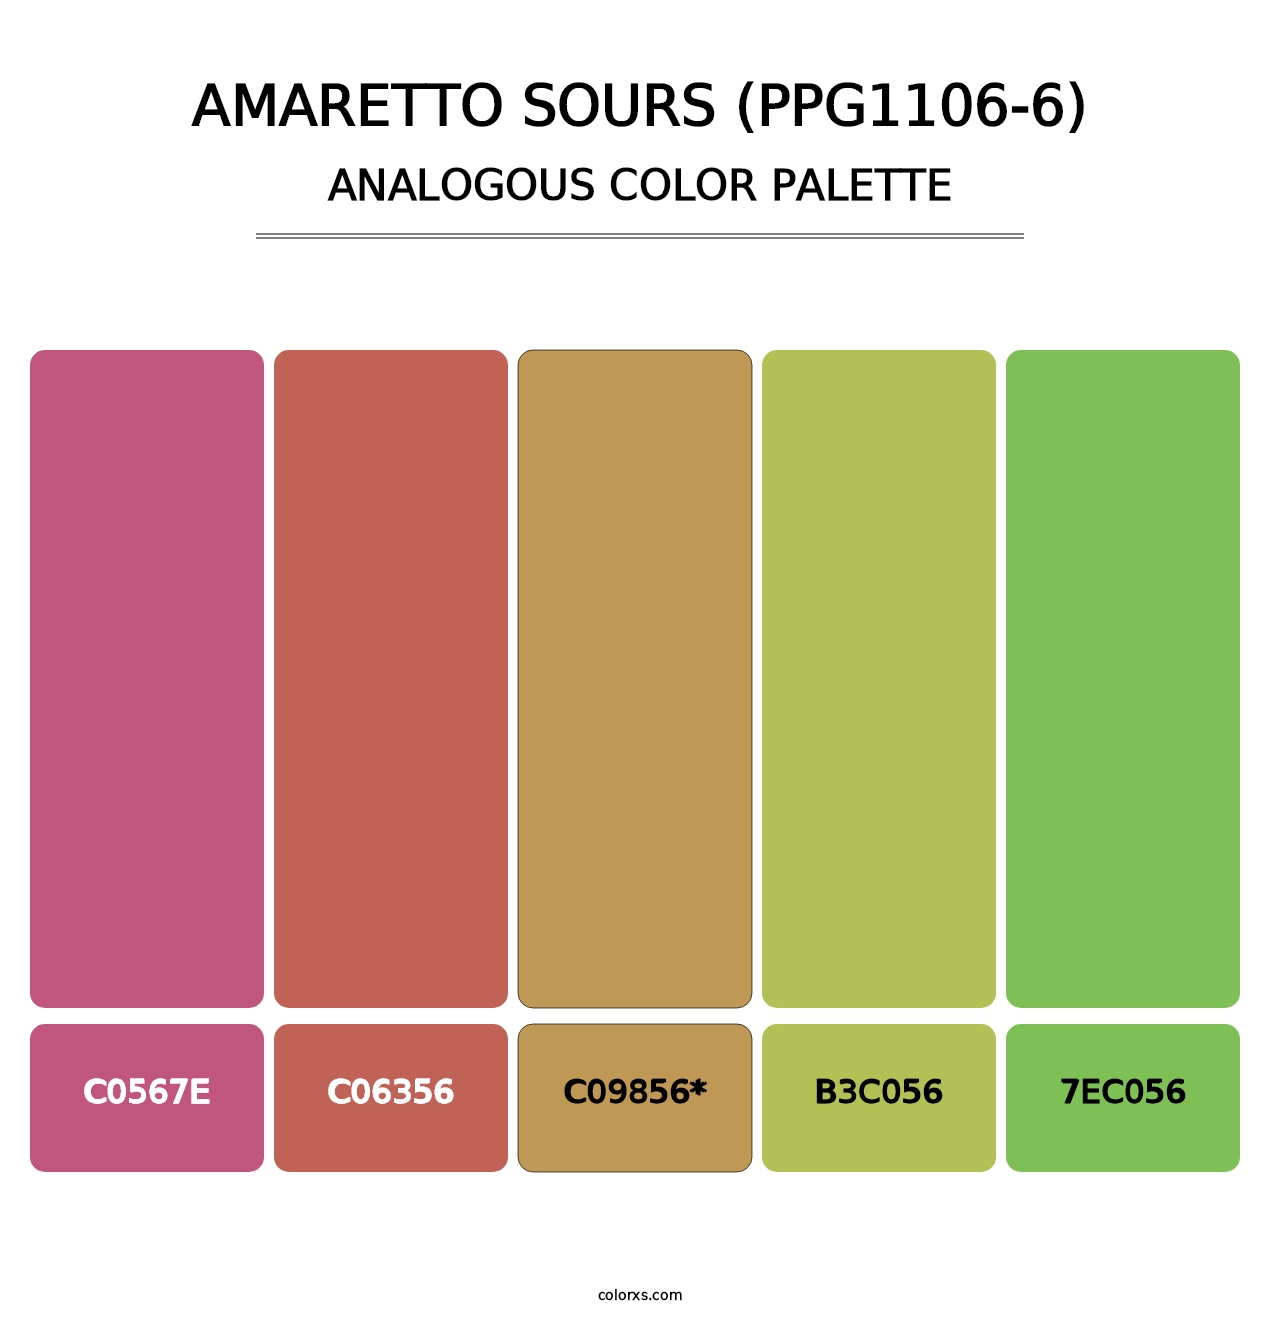 Amaretto Sours (PPG1106-6) - Analogous Color Palette